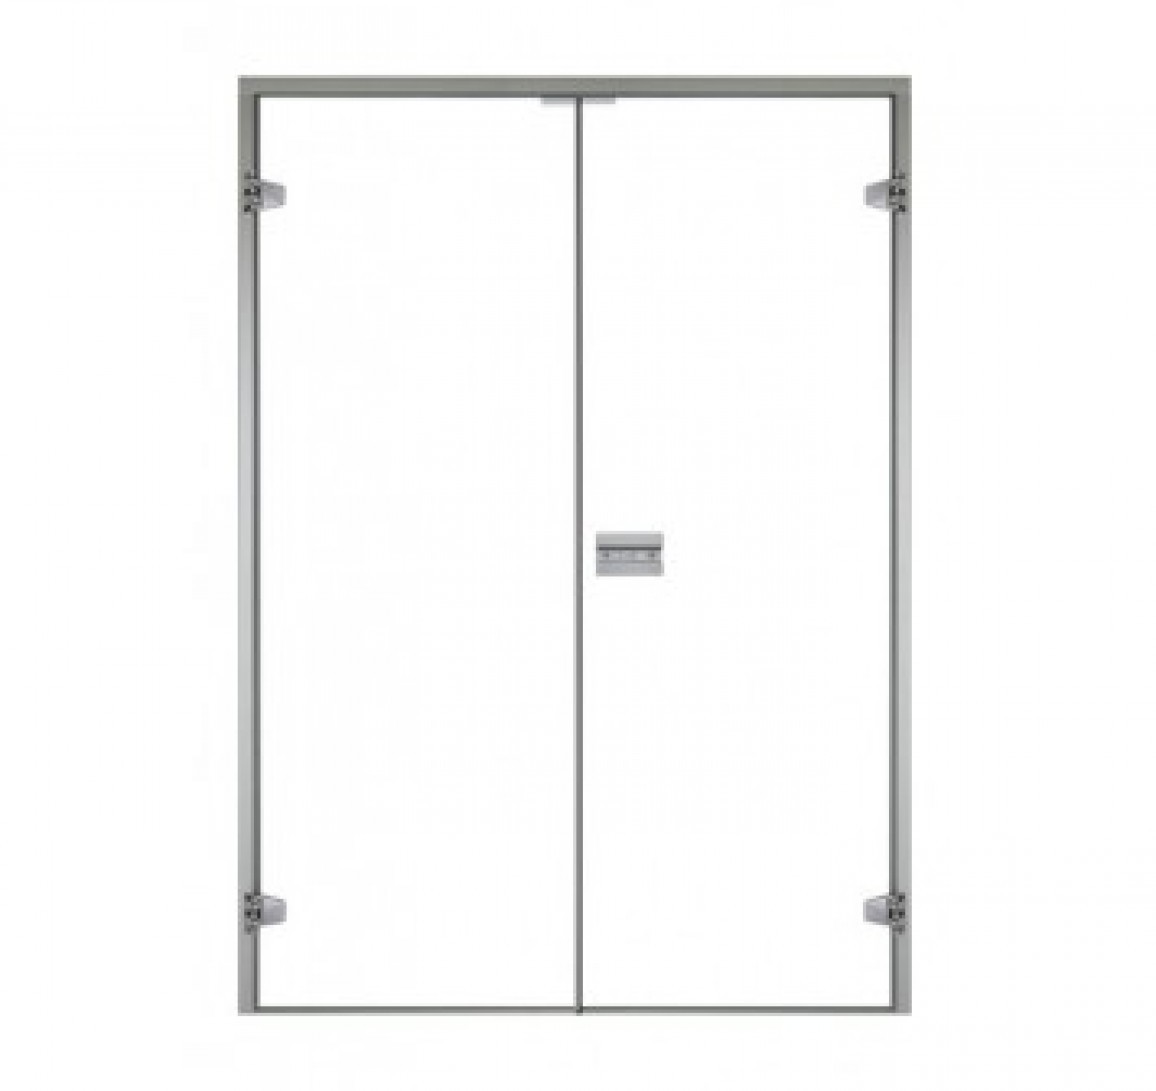 Стеклянная дверь для сауны Harvia, двойные 17/21 коробка ольха/осина, прозрачная